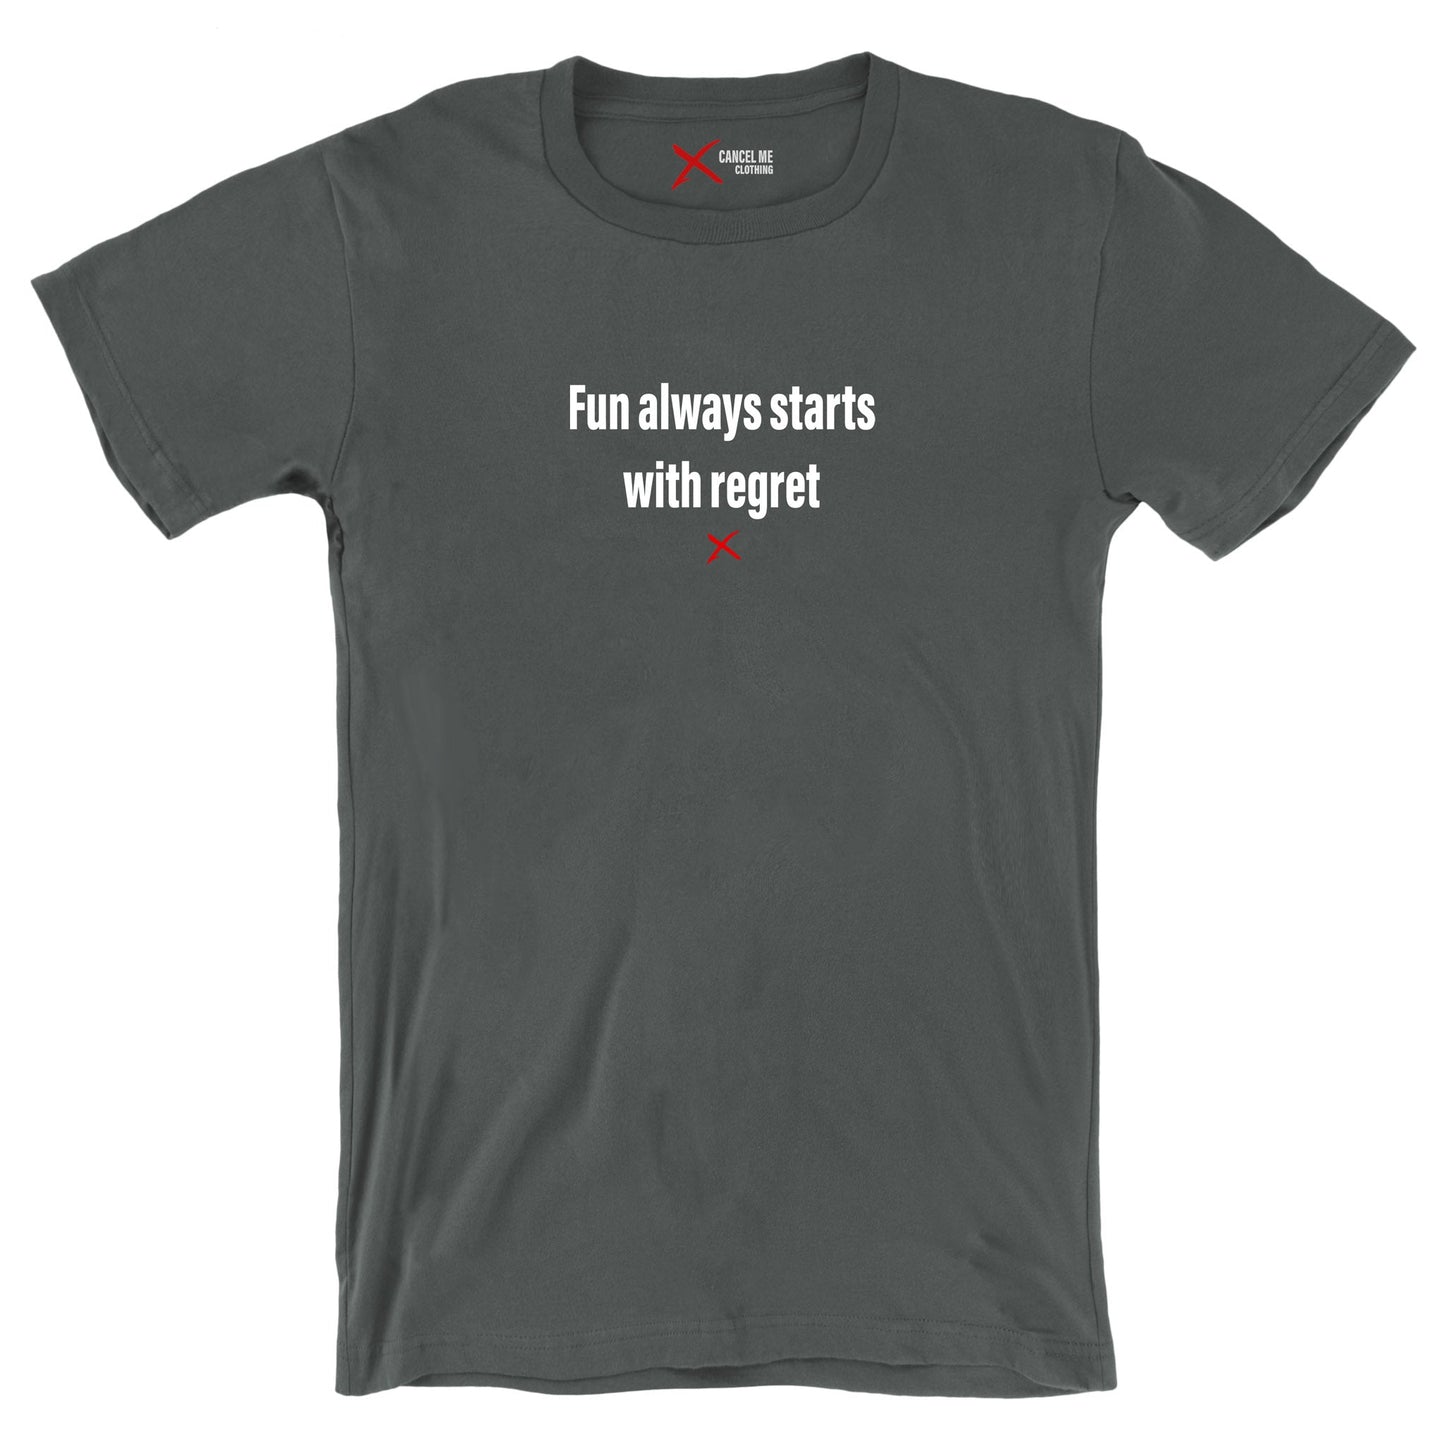 Fun always starts with regret - Shirt